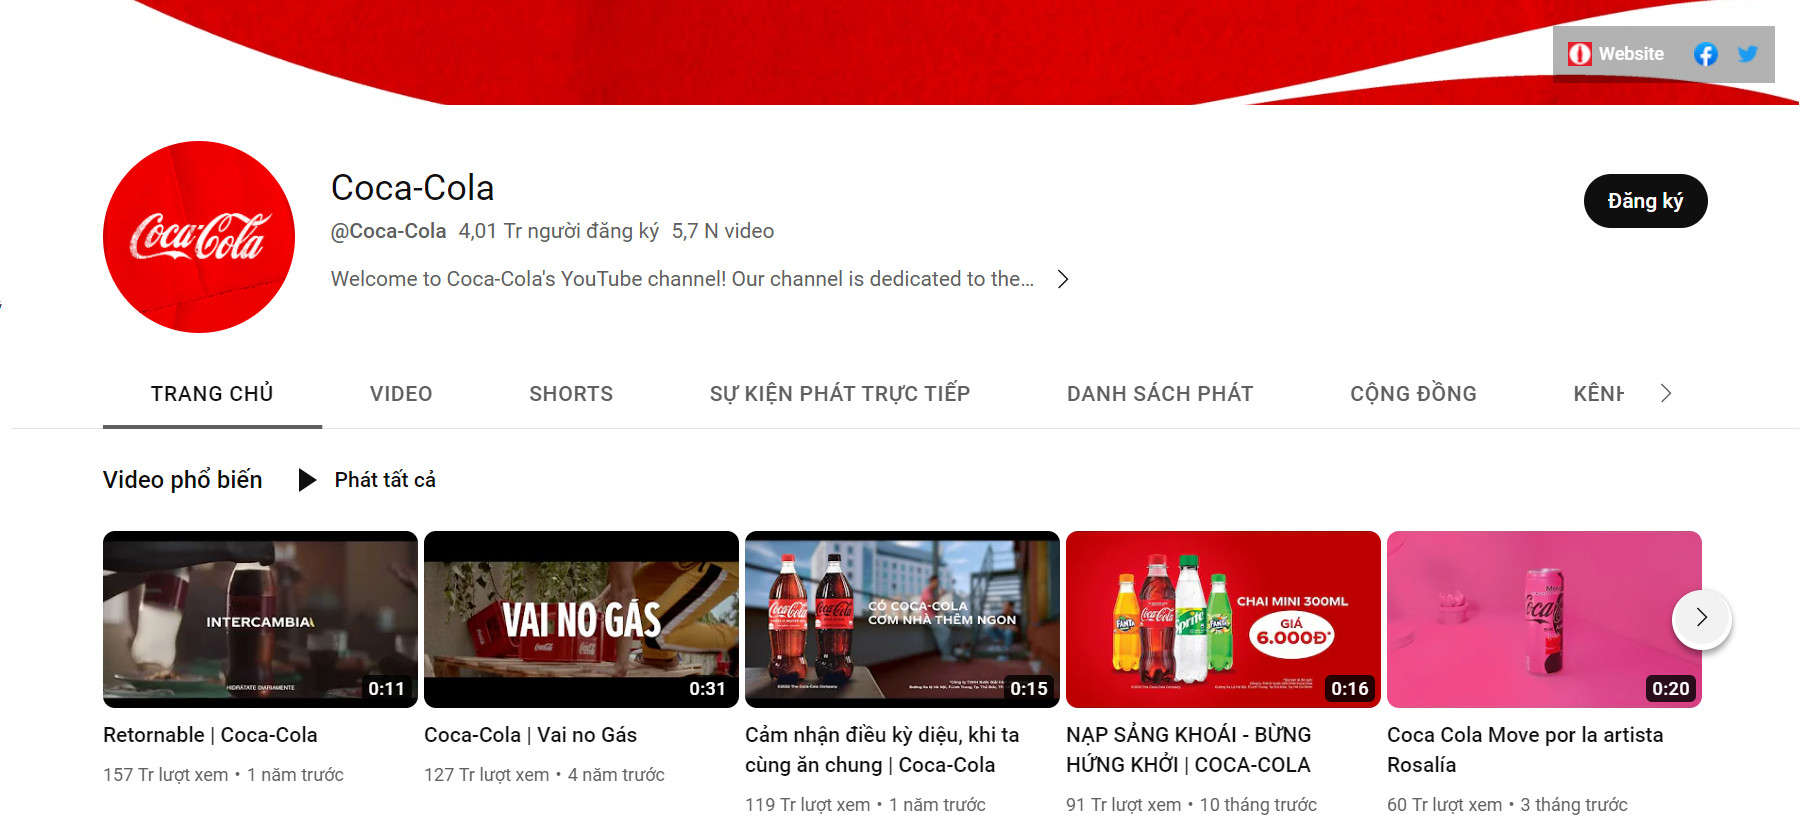 Chiến lược quảng cáo của Coca Cola trên Youtube